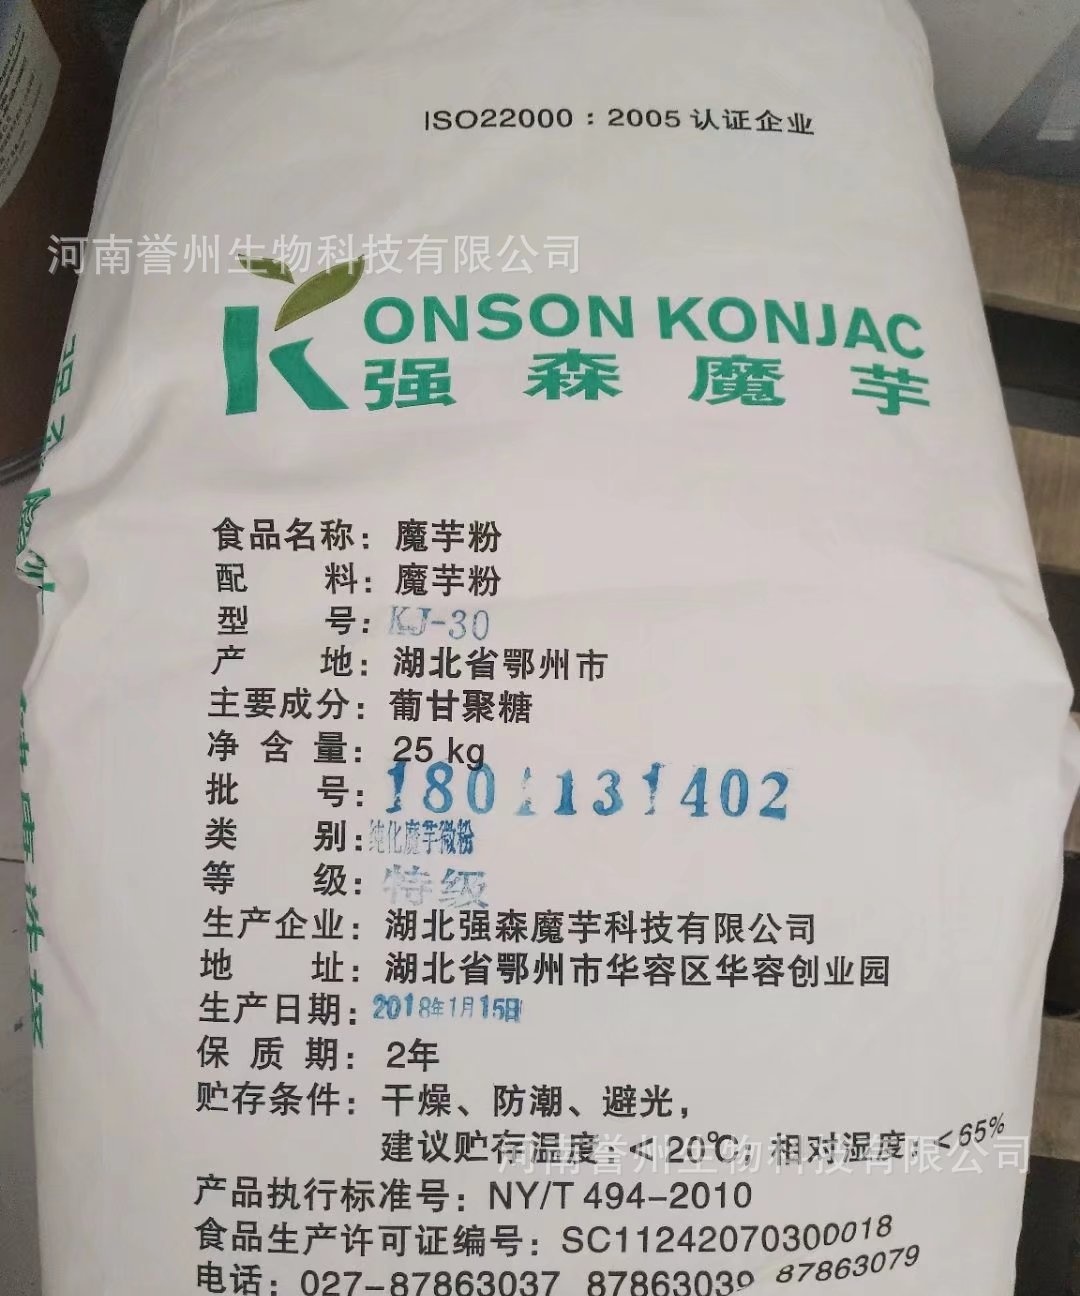 现货批发食品级魔芋胶魔芋纯化粉KJ-30代餐粉食品添加剂